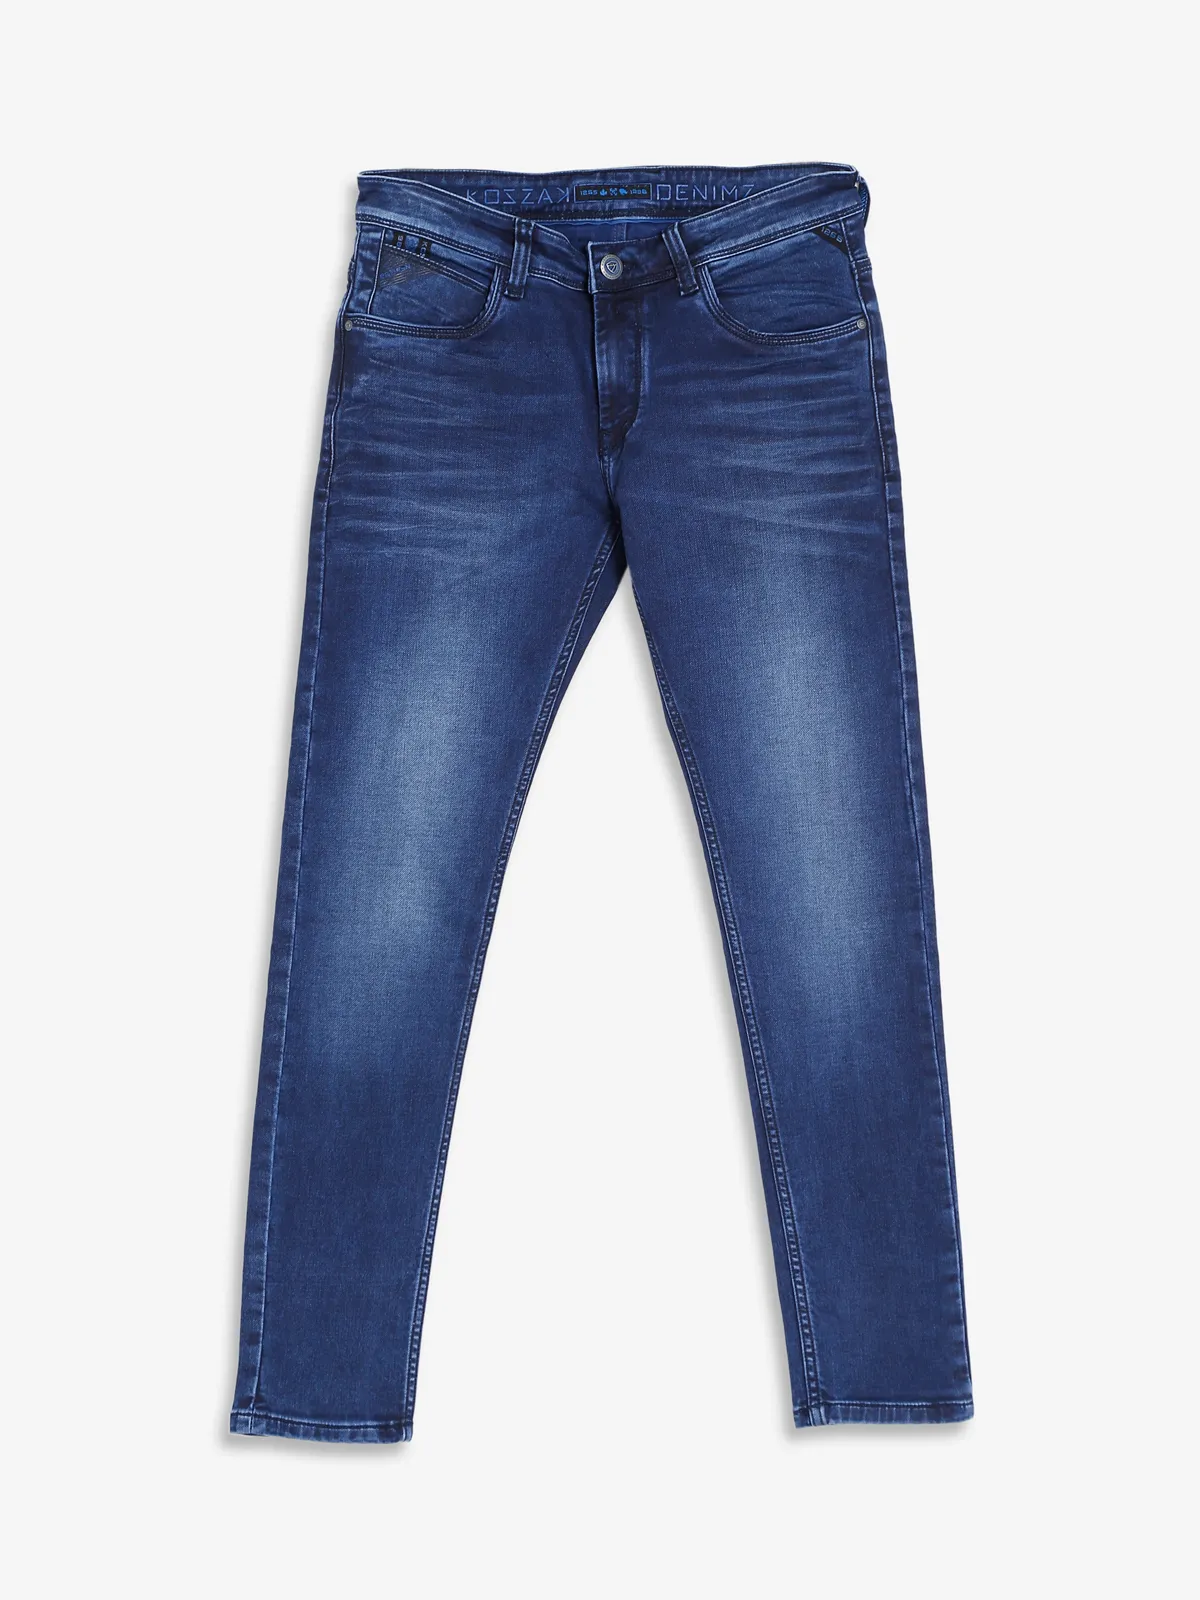 Kozzak dark blue washed super skinny fit jeans